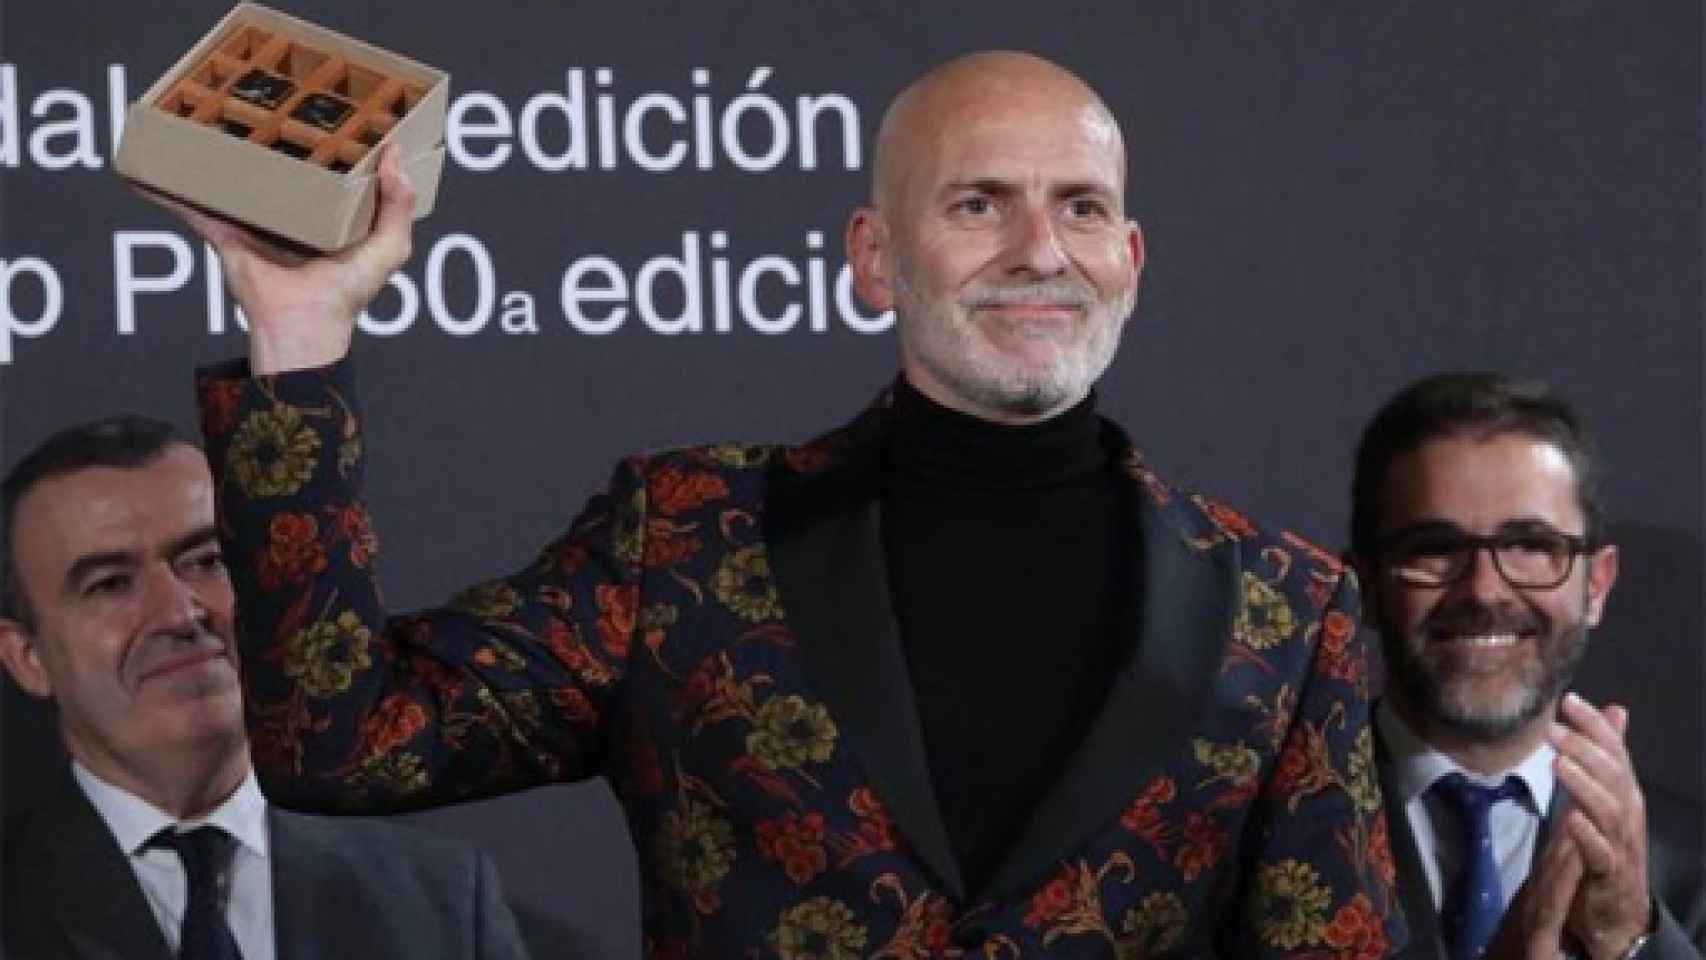 Image: Alejandro Palomas, Premio Nadal 2018